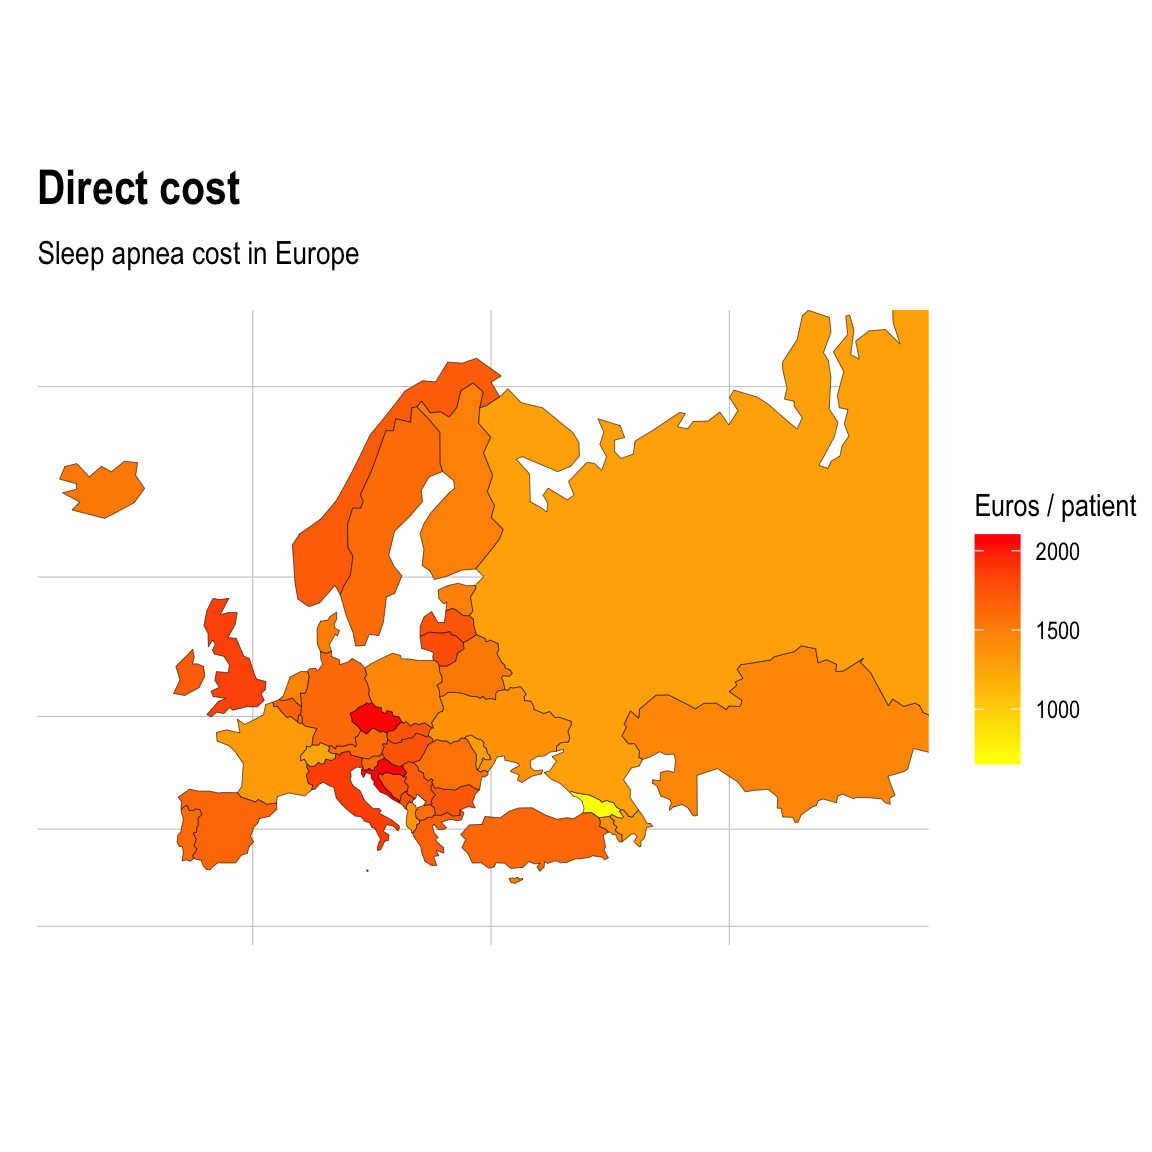 Estimated sleep apnea direct cost per patient in Europe.